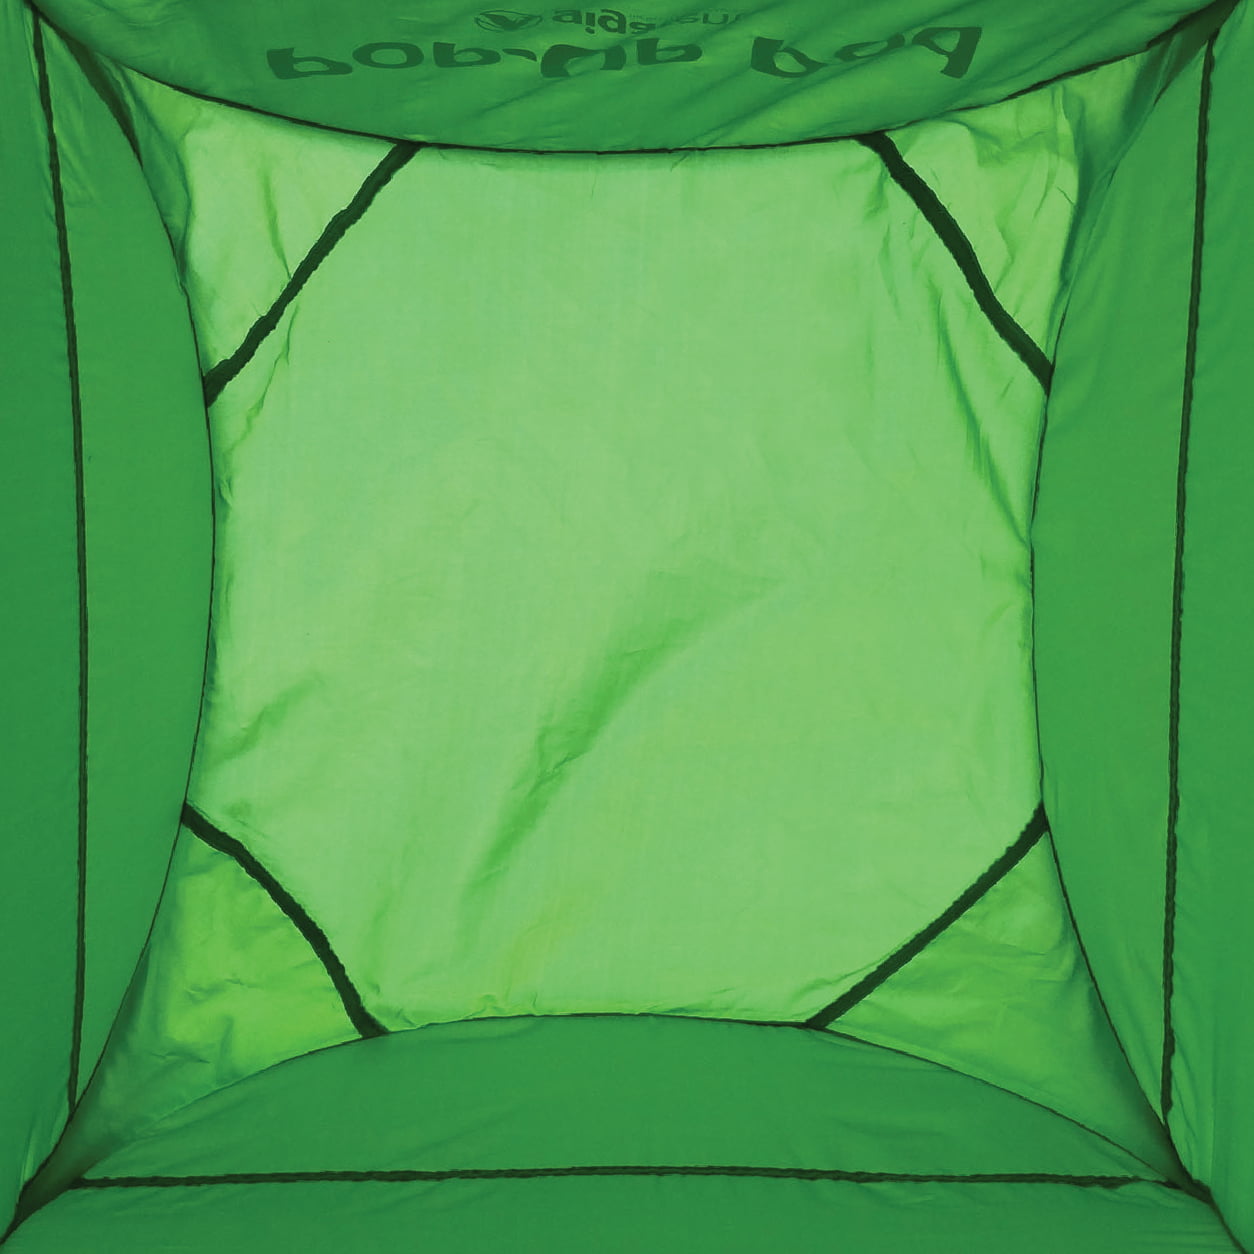 خيمة خصوصية منبثقة لشخص واحد للتخييم وغرفة تغيير الملابس، محطة دش محمولة (أخضر)